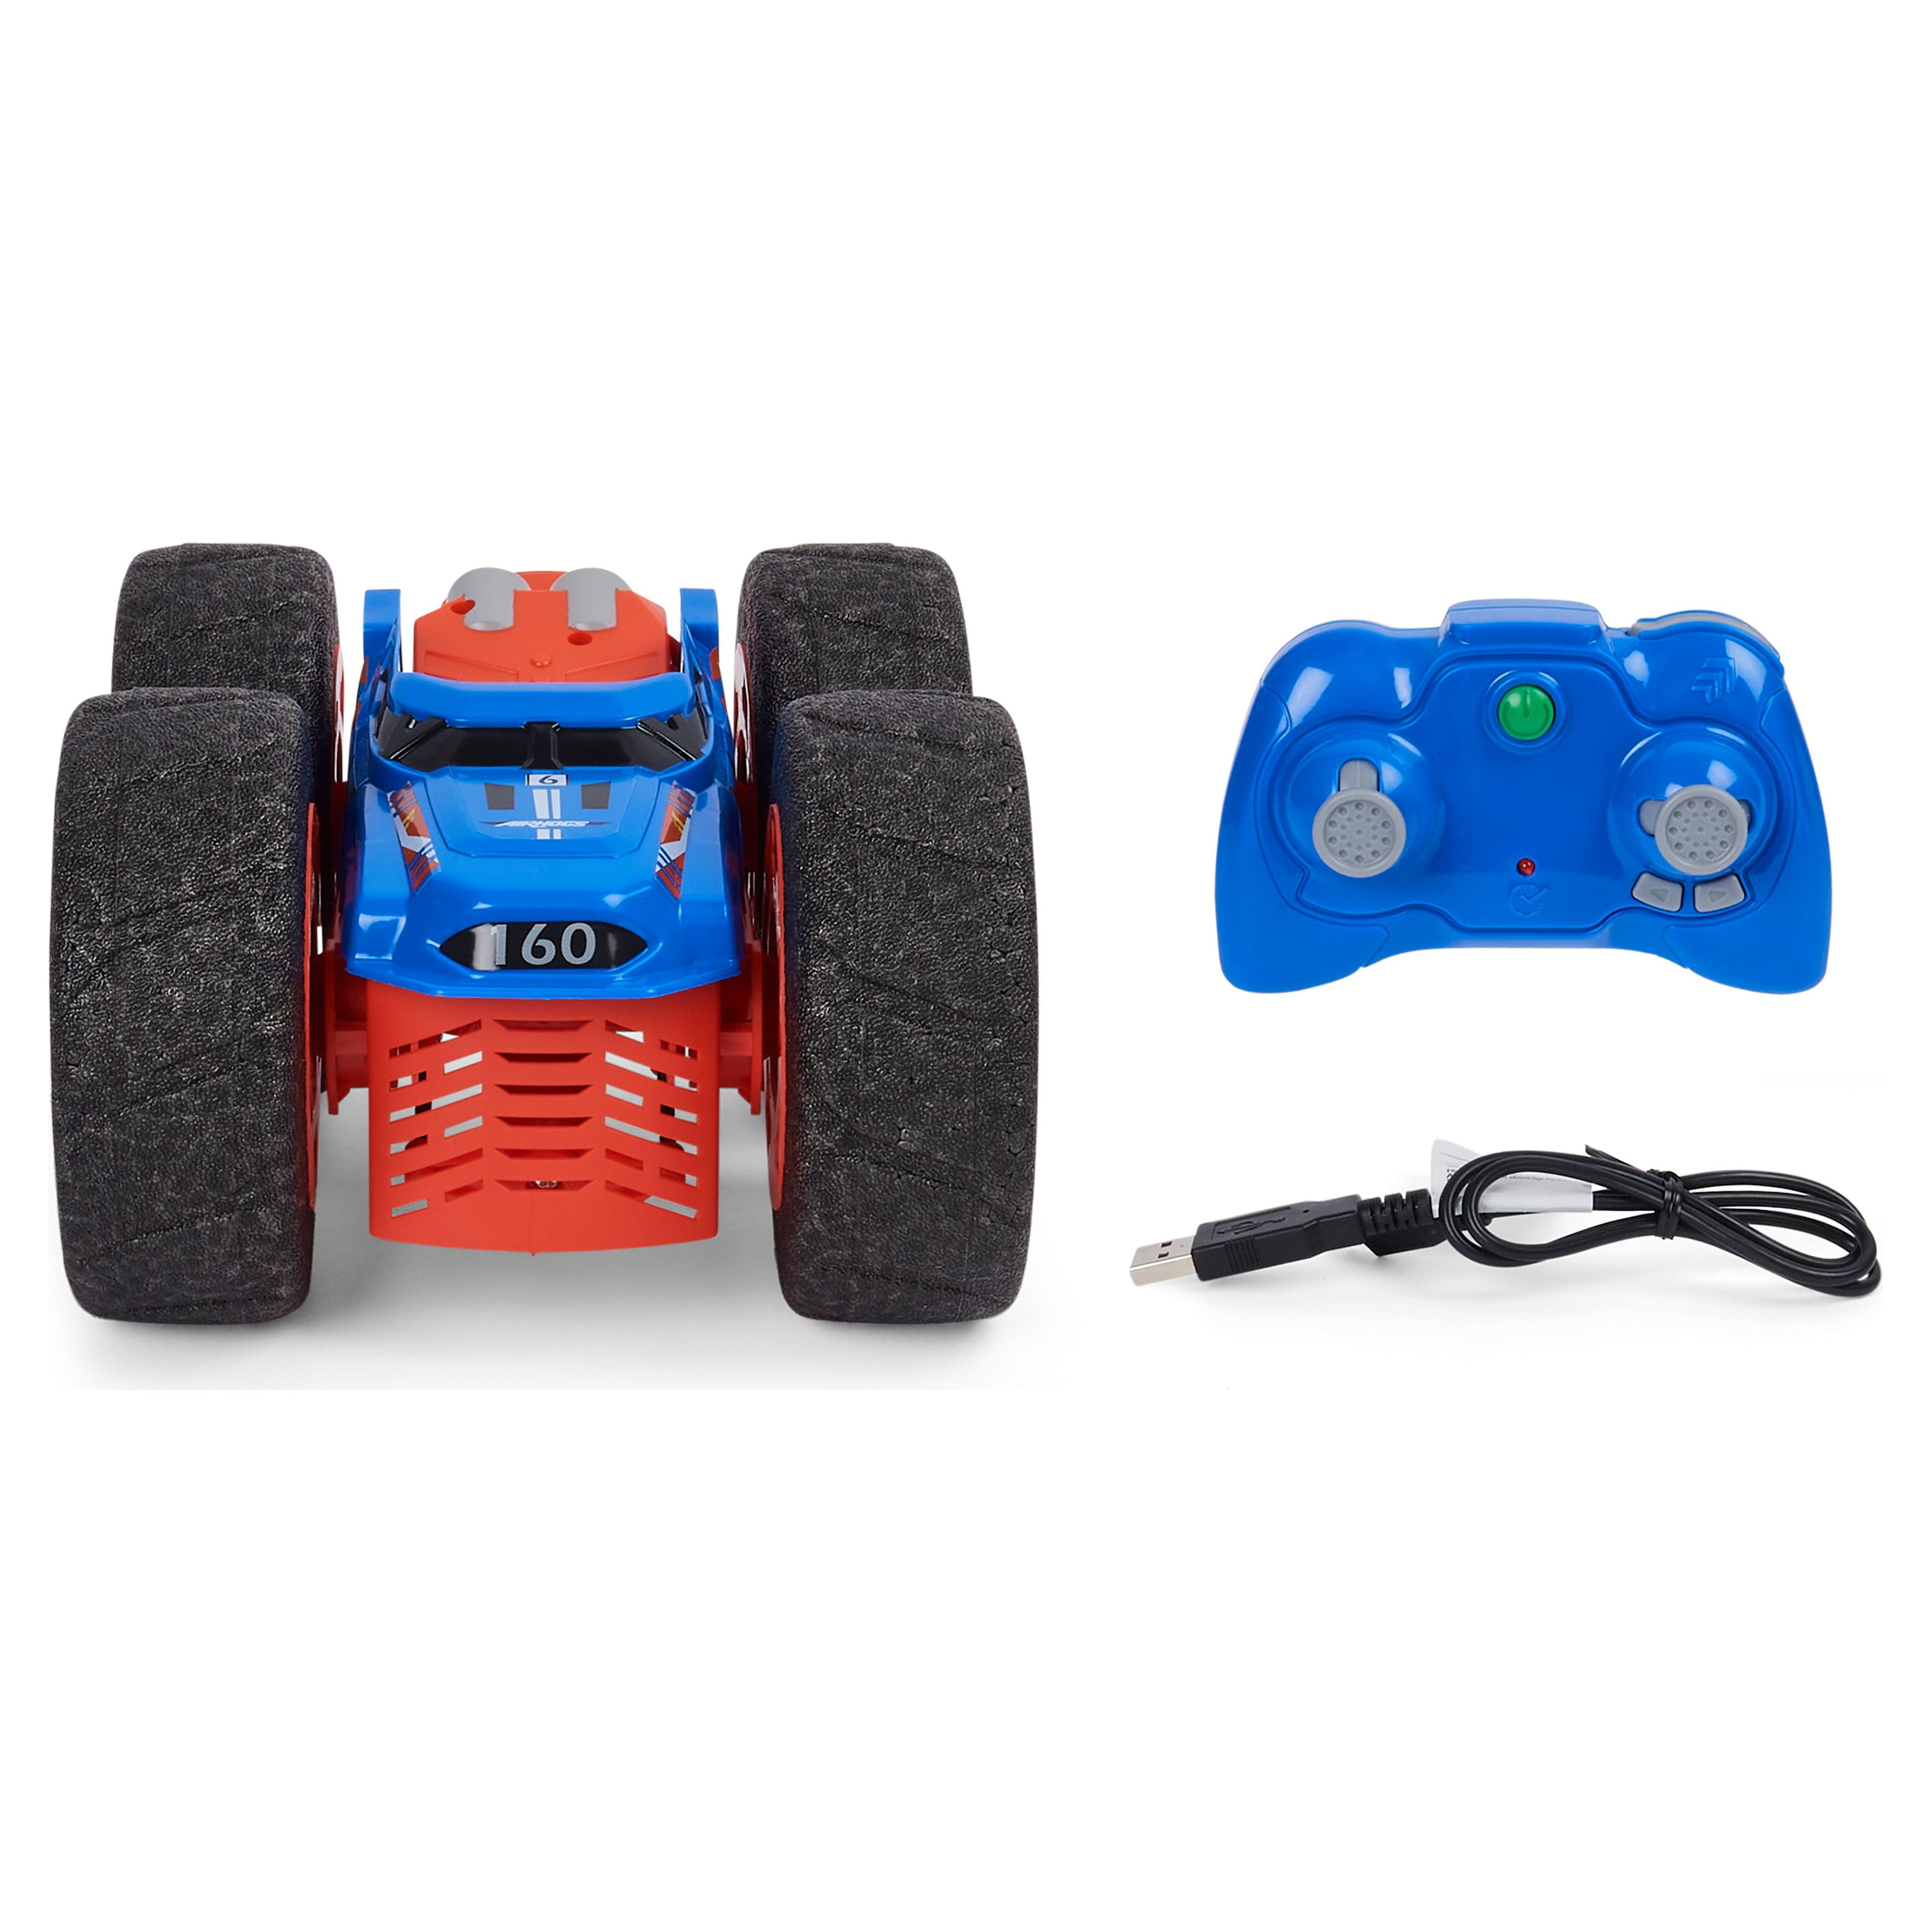 Air Hogs Super Soft, Jump Fury avec roues zéro dégâts, voiture  radiocommandée pour sauts extrêmes, jouets pour les enfants à partir de 4  ans, échelle 1:15 